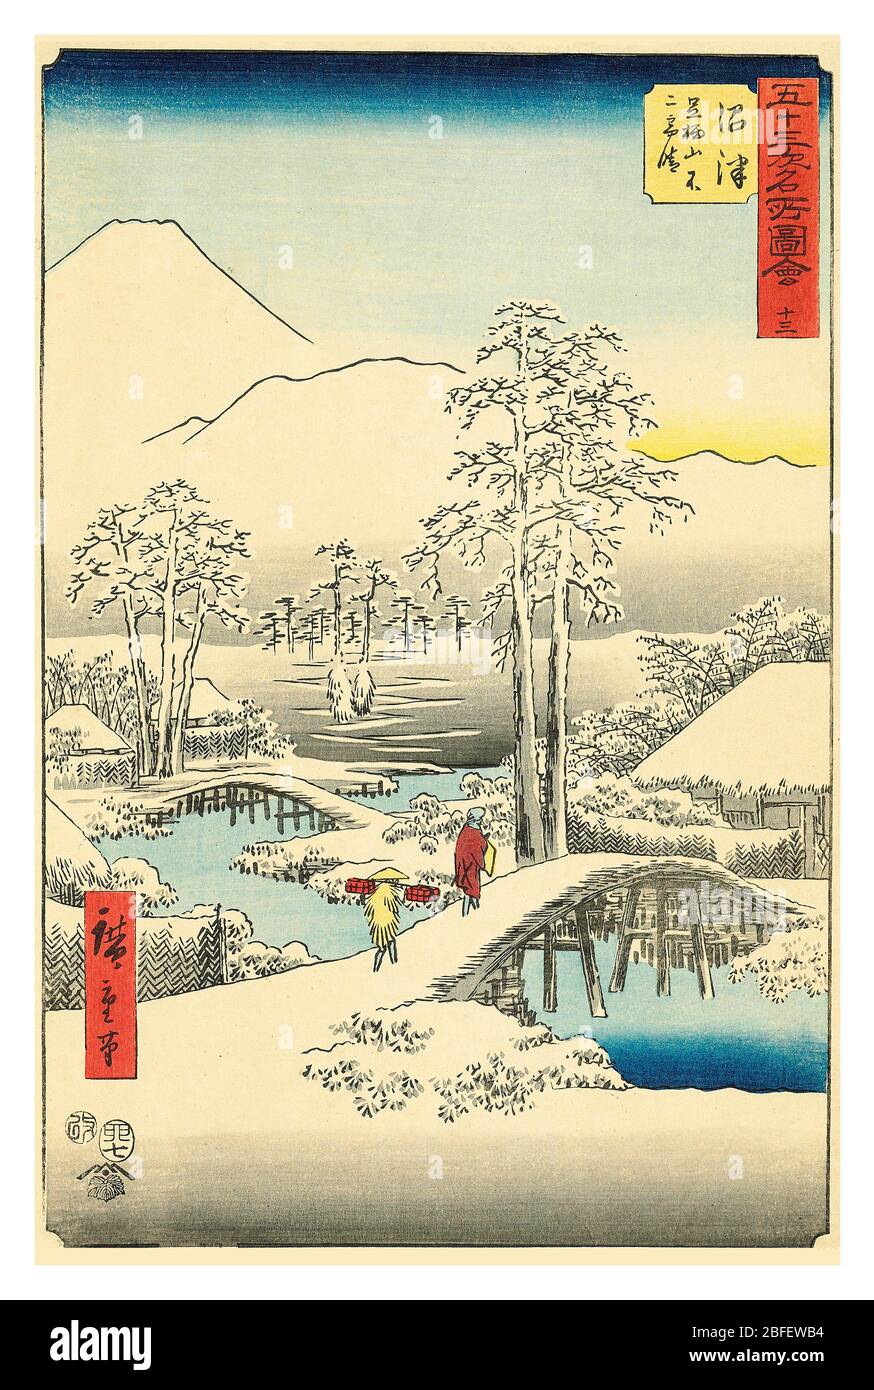 HIROSHIGE Vintage 1800s Illustration ‘Utagawa Hiroshige’ : Numazu: Berg Fuji und Berg Ashigara nach Schnee ... Numazu ashigarayama fuji yikihare Serie Titel: 53 berühmte Ansichten, bekannt als Vertical Tokaido (oder berühmte Orte der 53 Stationen der Tōkaidō) Hiroshiges bemerkenswerte Geschicklichkeit in der Darstellung von Schnee-Szenen. Zwei Reisende überqueren den Kise River über eine Fußgängerbrücke, während sie sich einem Gasthaus an der Numazu Station nähern. Dieses Blatt stammt aus der letzten Serie, die Hiroshige veröffentlicht hat Utagwa Hiroshige, geboren Andō Hiroshige, war ein japanischer Ukiyo-e Künstler, der als letzter großer Meister gilt Stockfoto